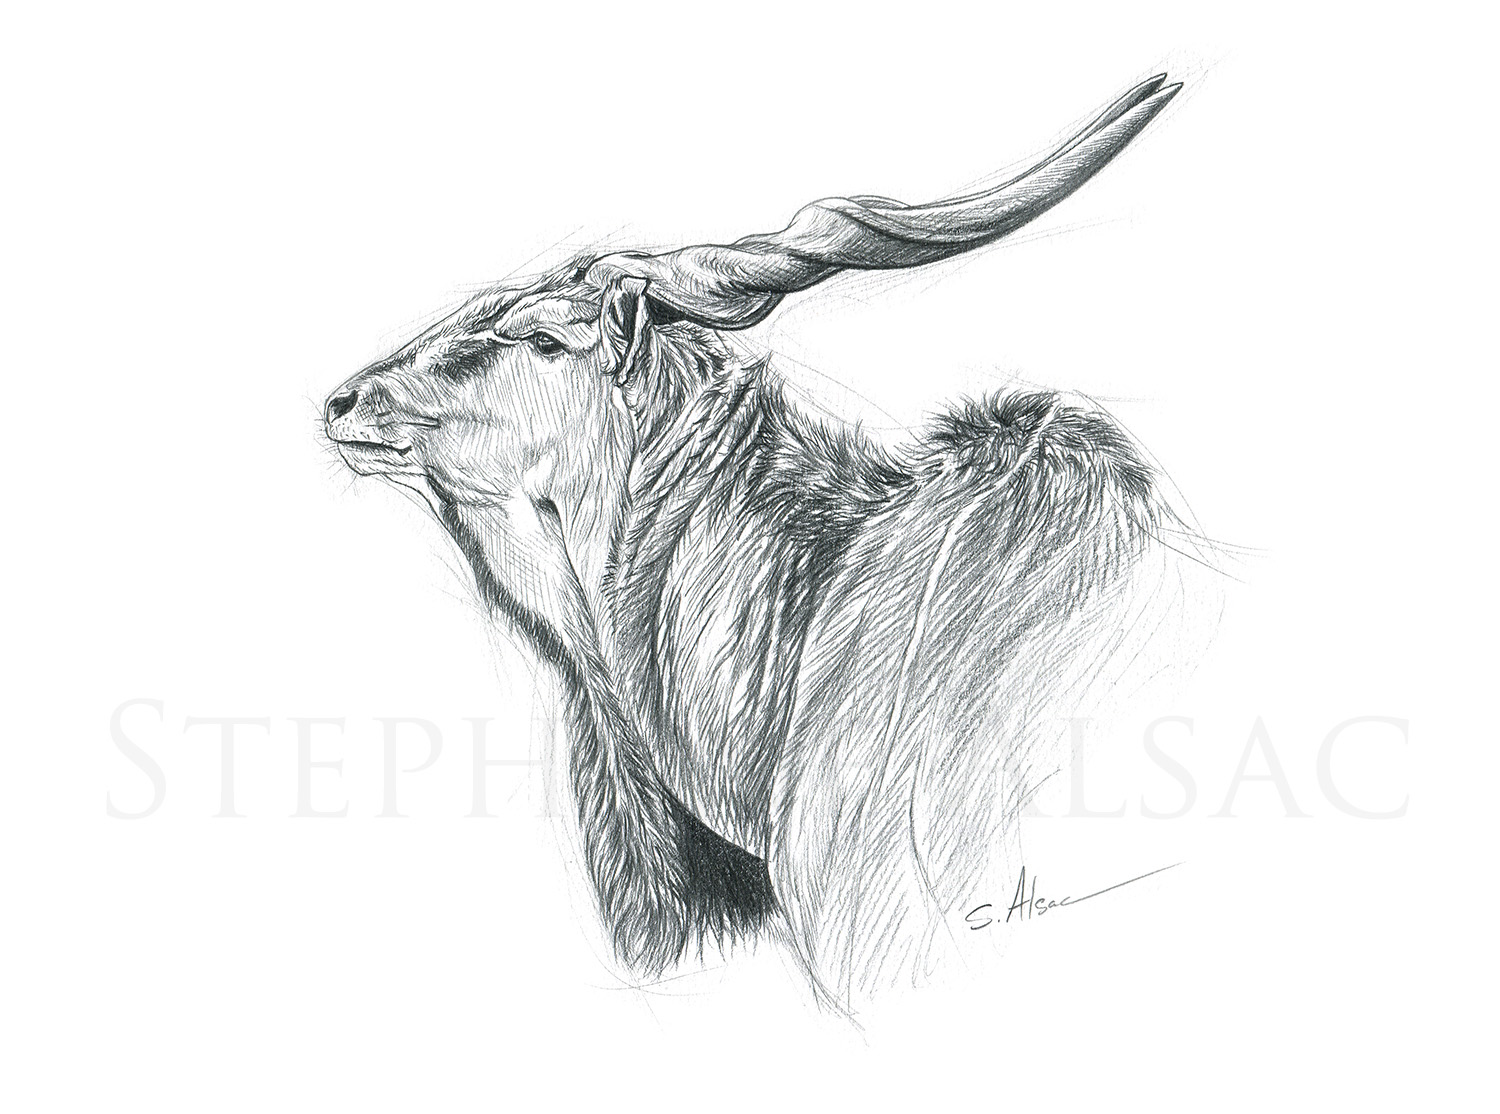 dessin-croquis-eland-derby-antilope-afrique